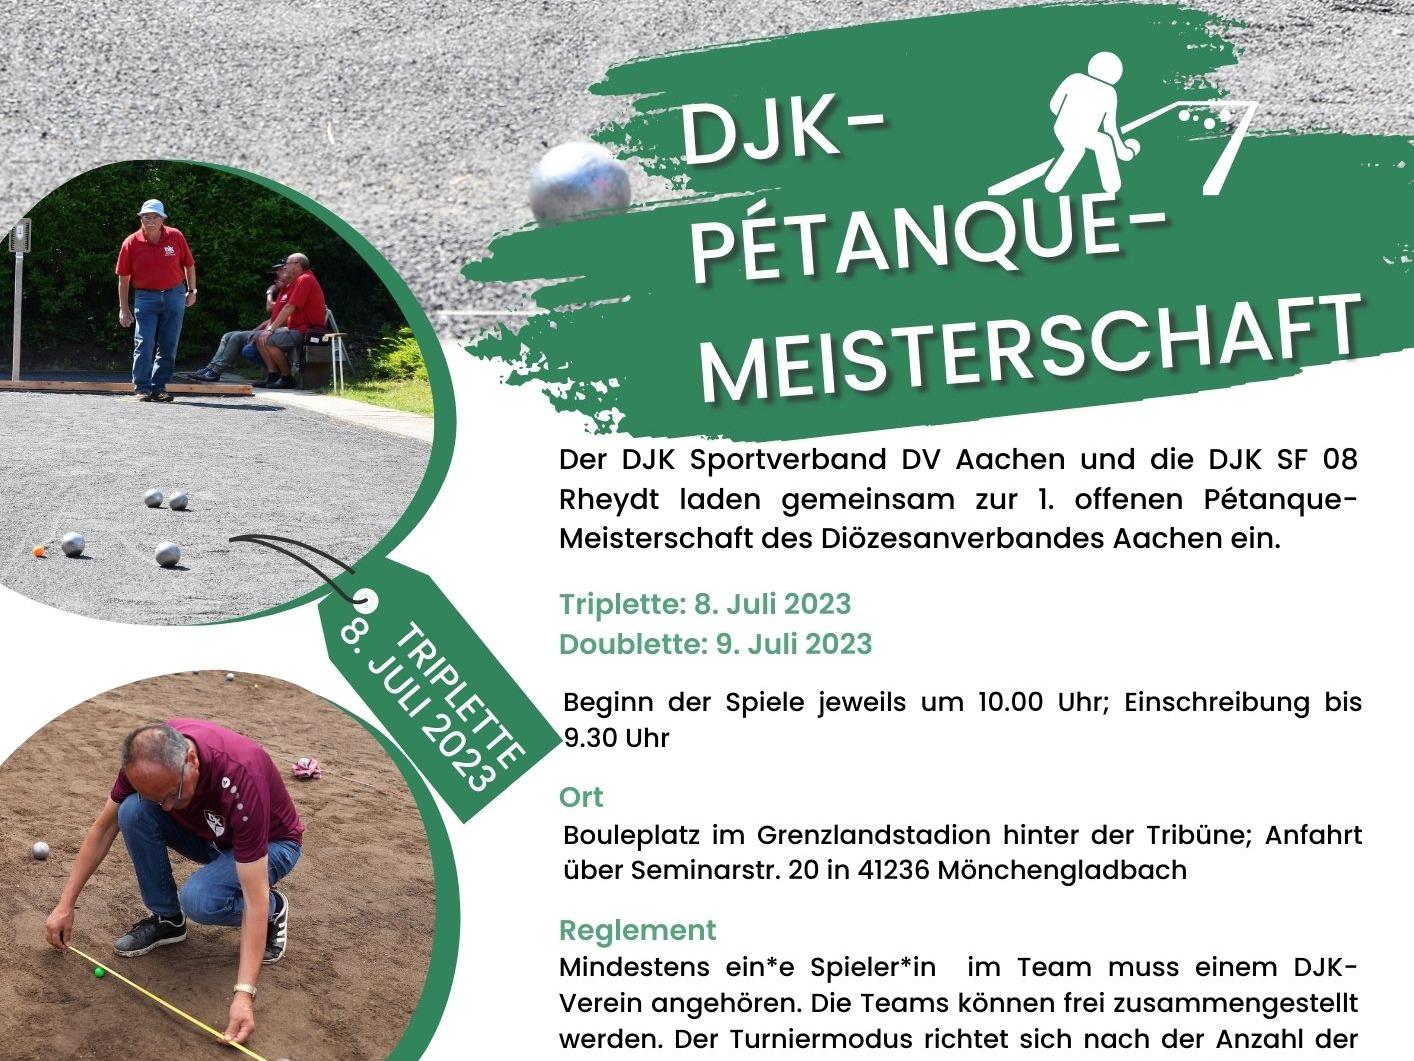 1_DJK-Petanque-Meisterschaft_DJK_DV_Aachen_